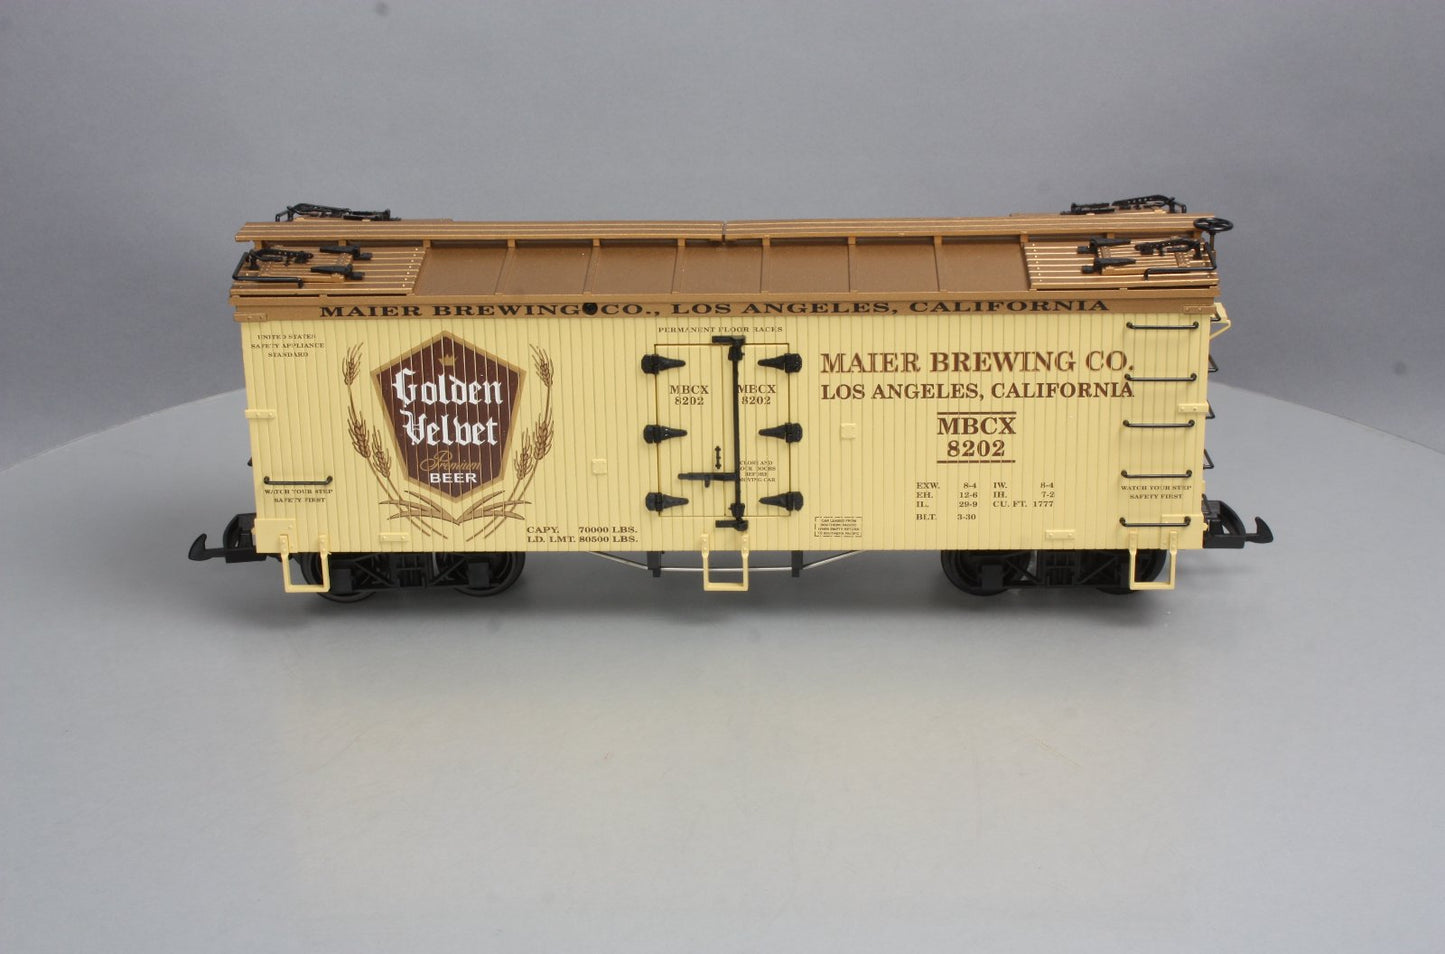 USA Trains 16355 G Scale Golden Velvet Beer Reefer #8202